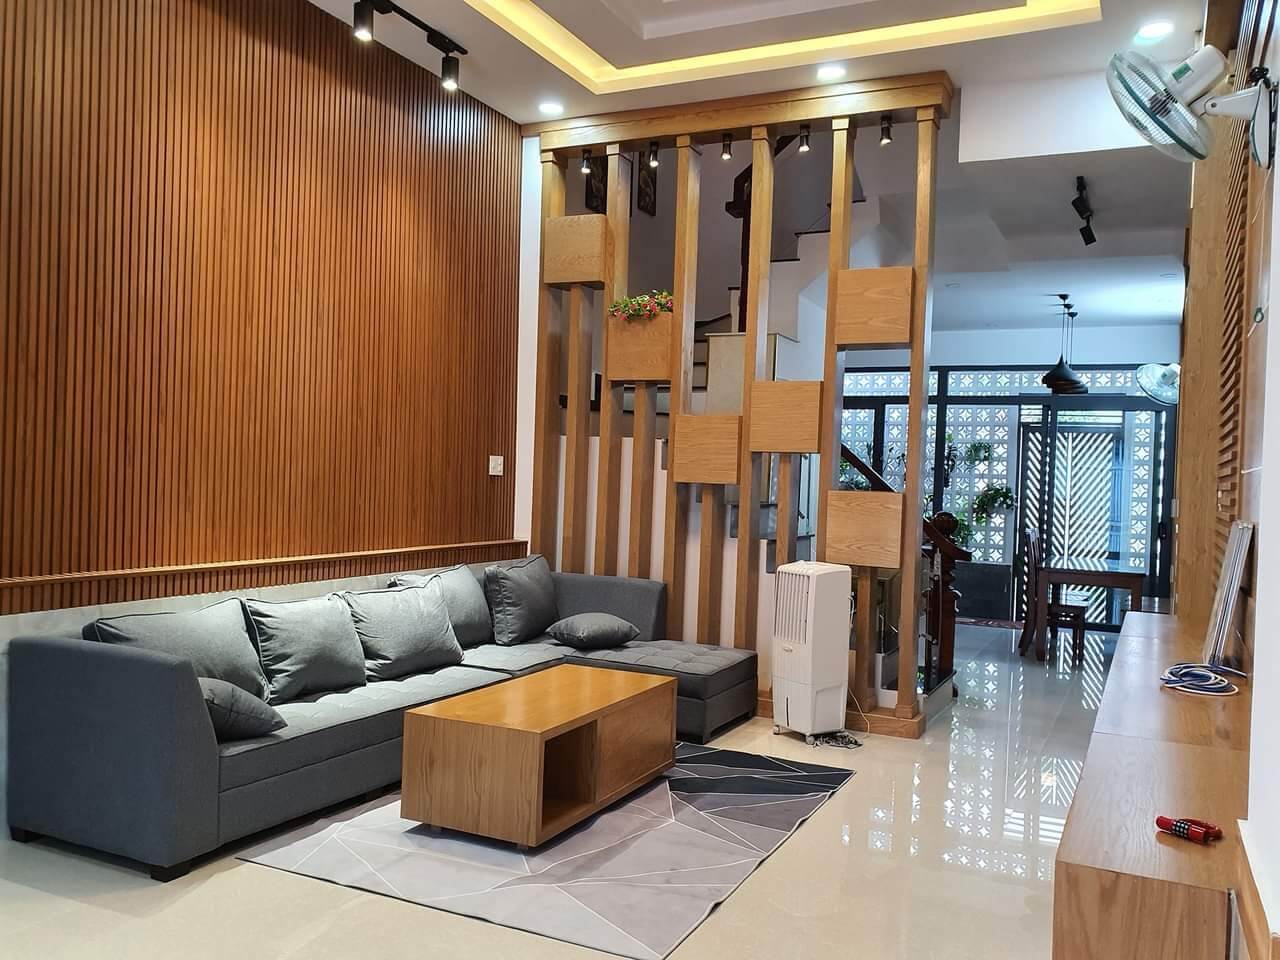 Mẫu thiết kế nội thất nhà ống hiện đại - Chị Vân, Tân Bình